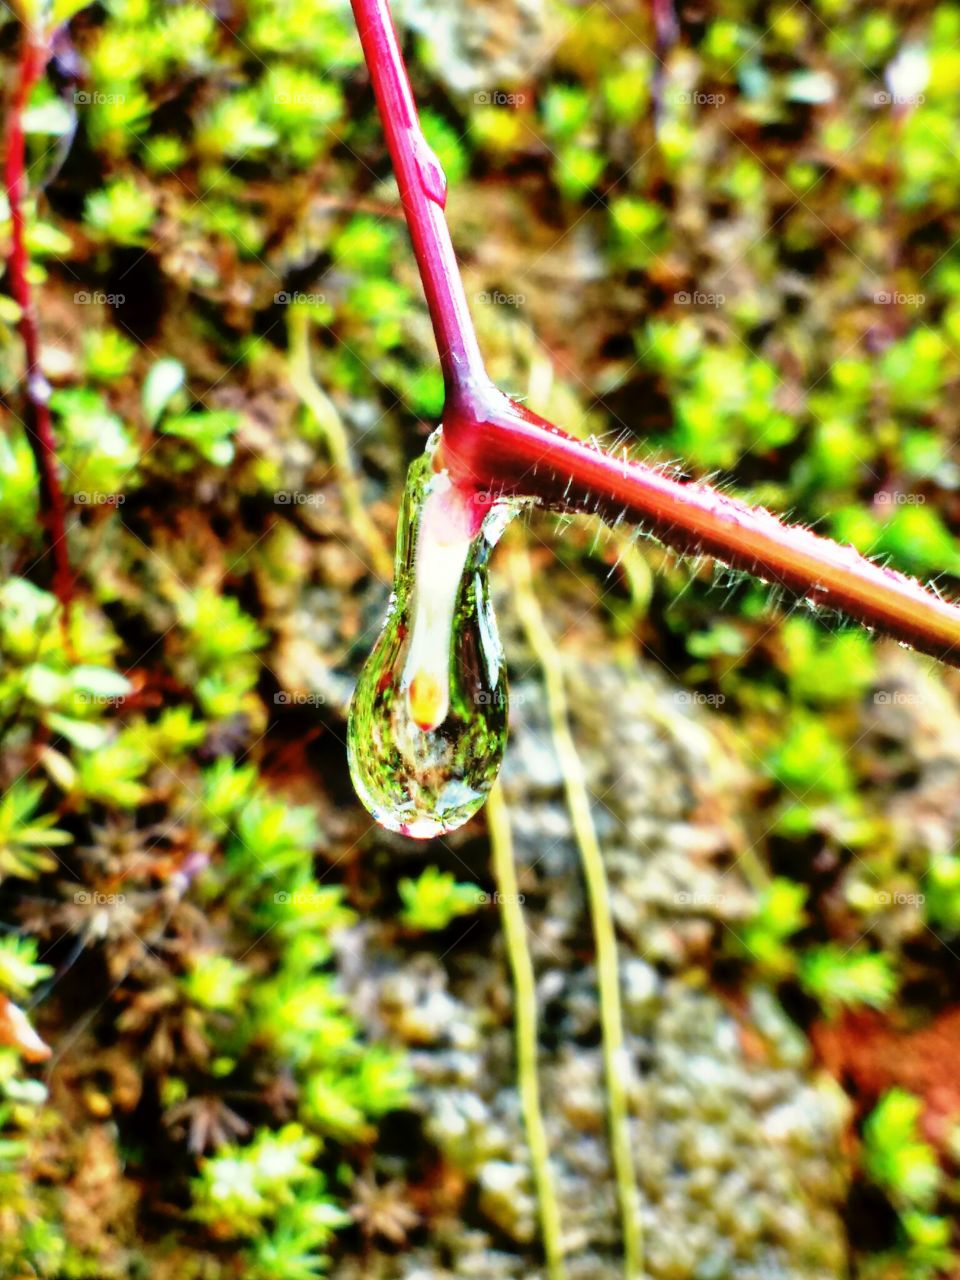 rain drop on a grass root